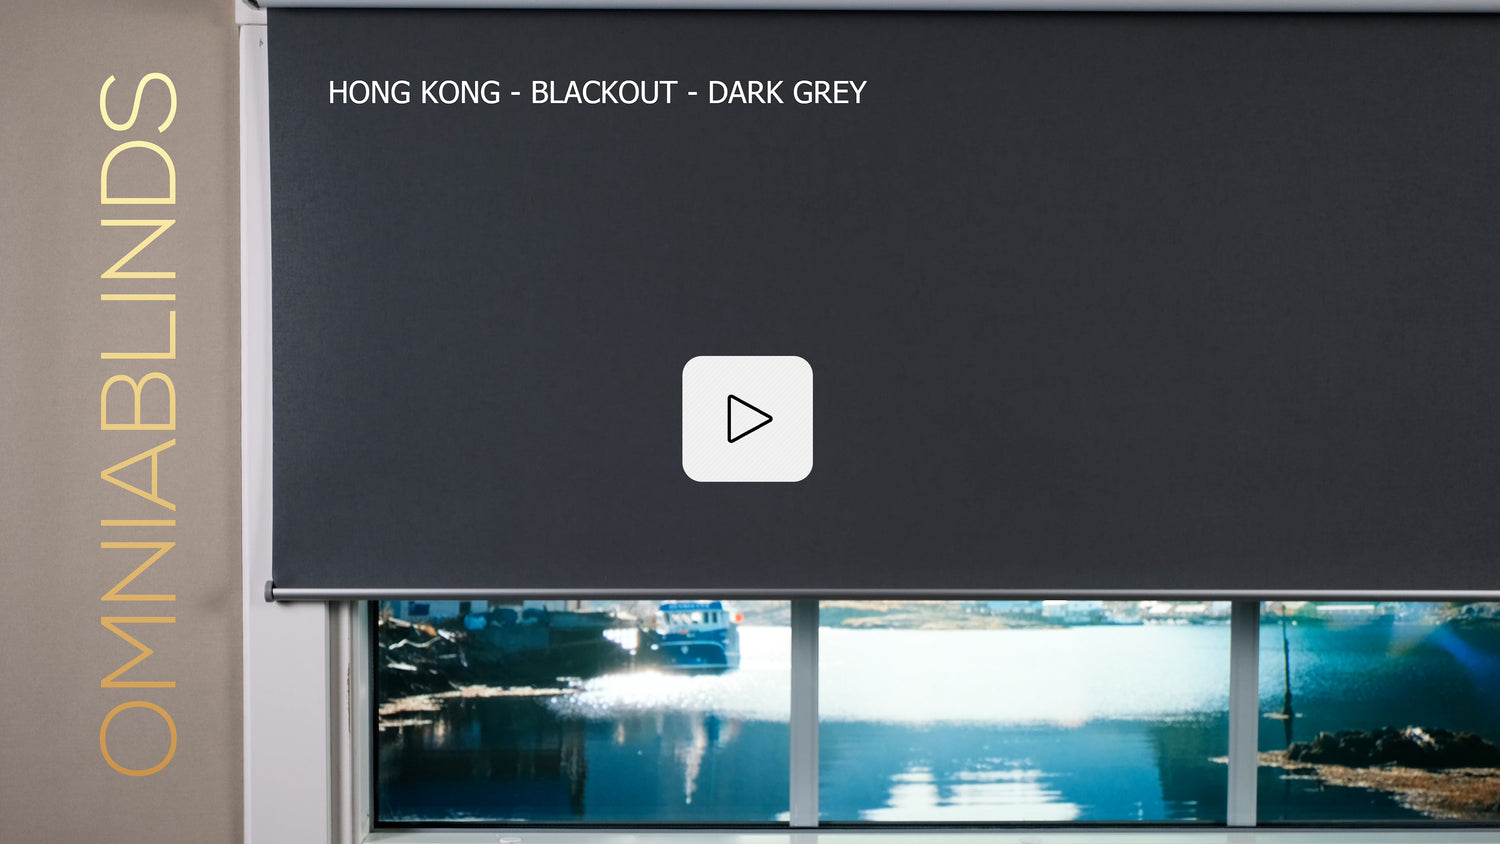 Hong Kong - Blackout - Dark Grey